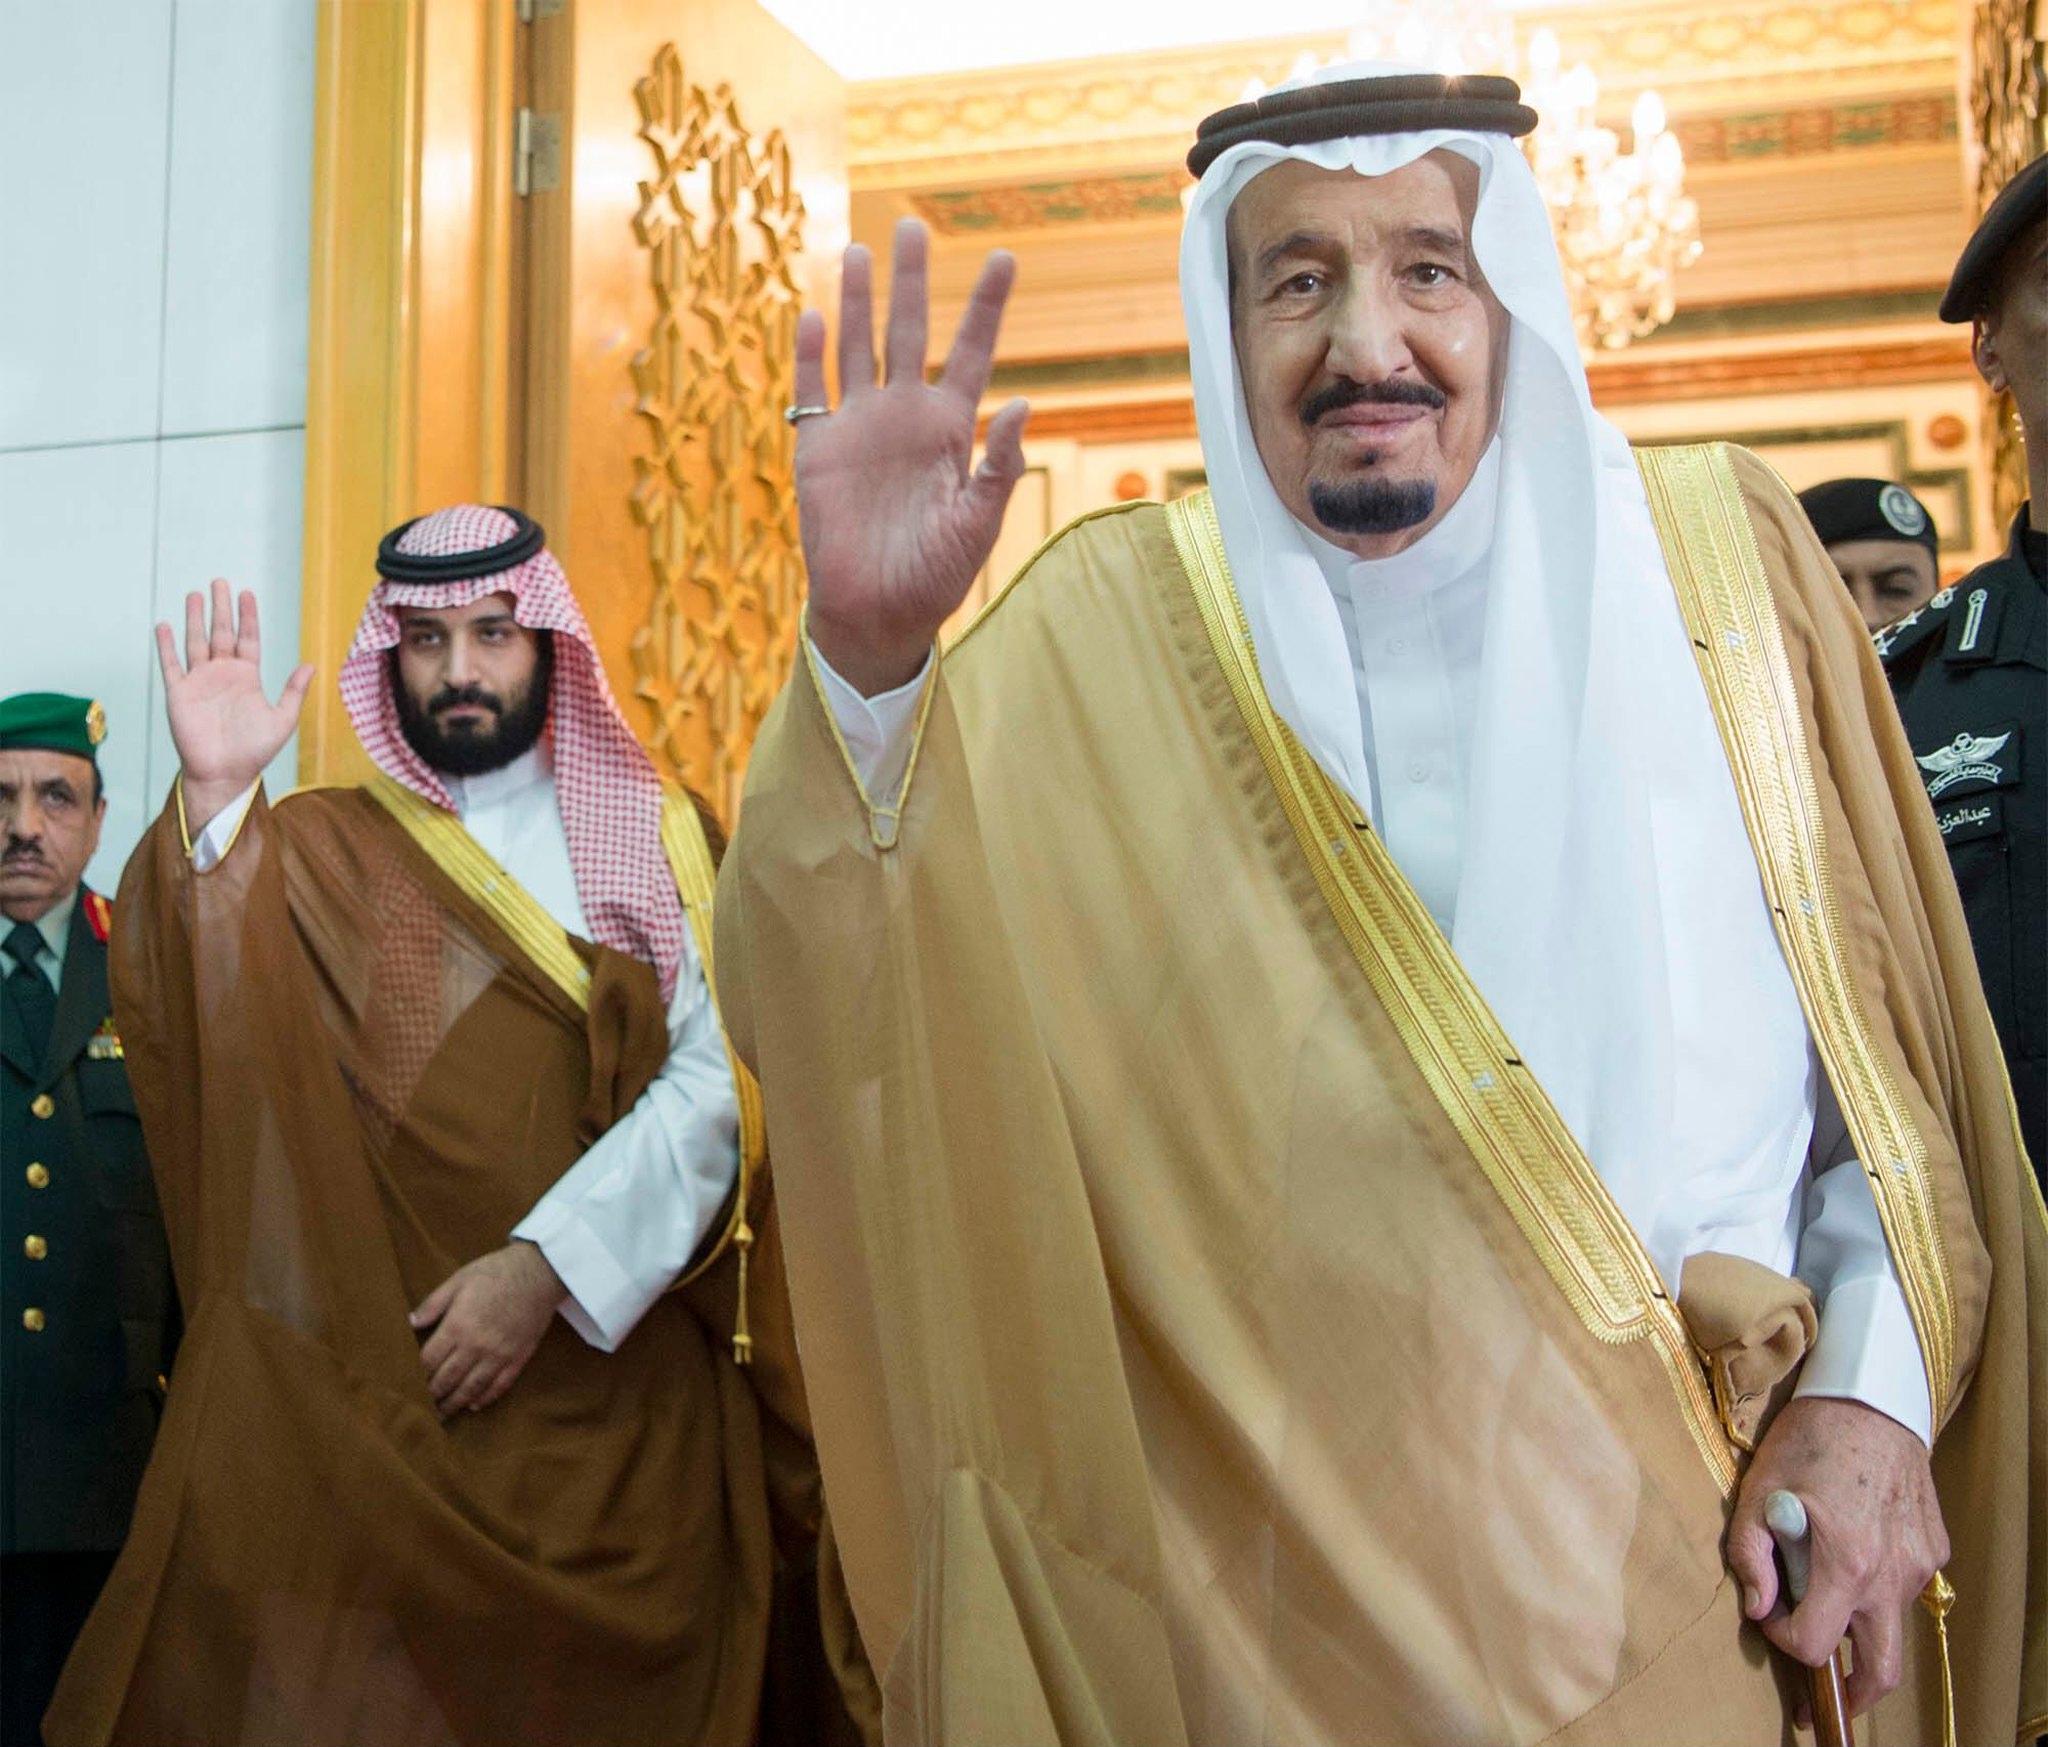 Arabia Saudita, tra petrolio e un cambio di guardia al potere: la rivoluzione in atto nella terra degli sceicchi